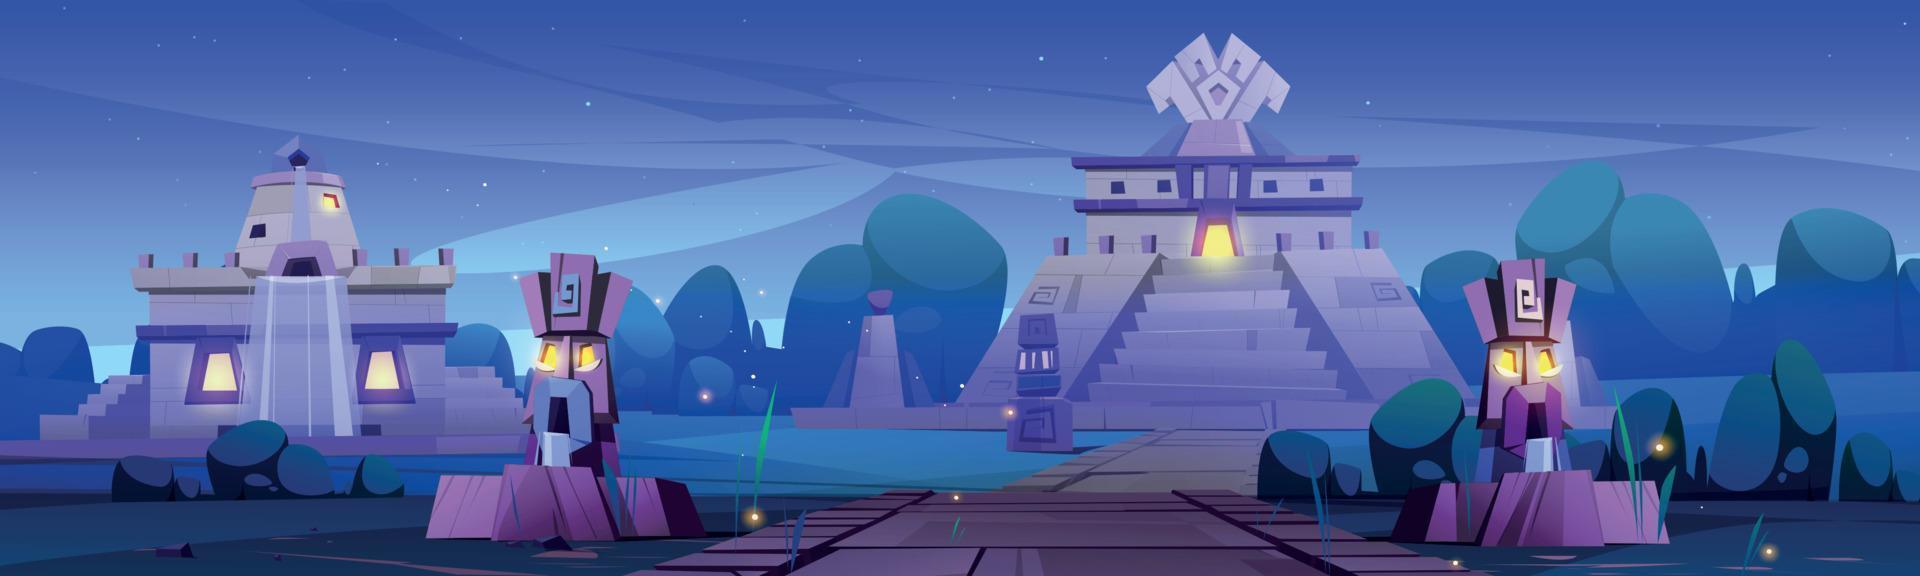 vila asteca com templo e estátuas à noite vetor